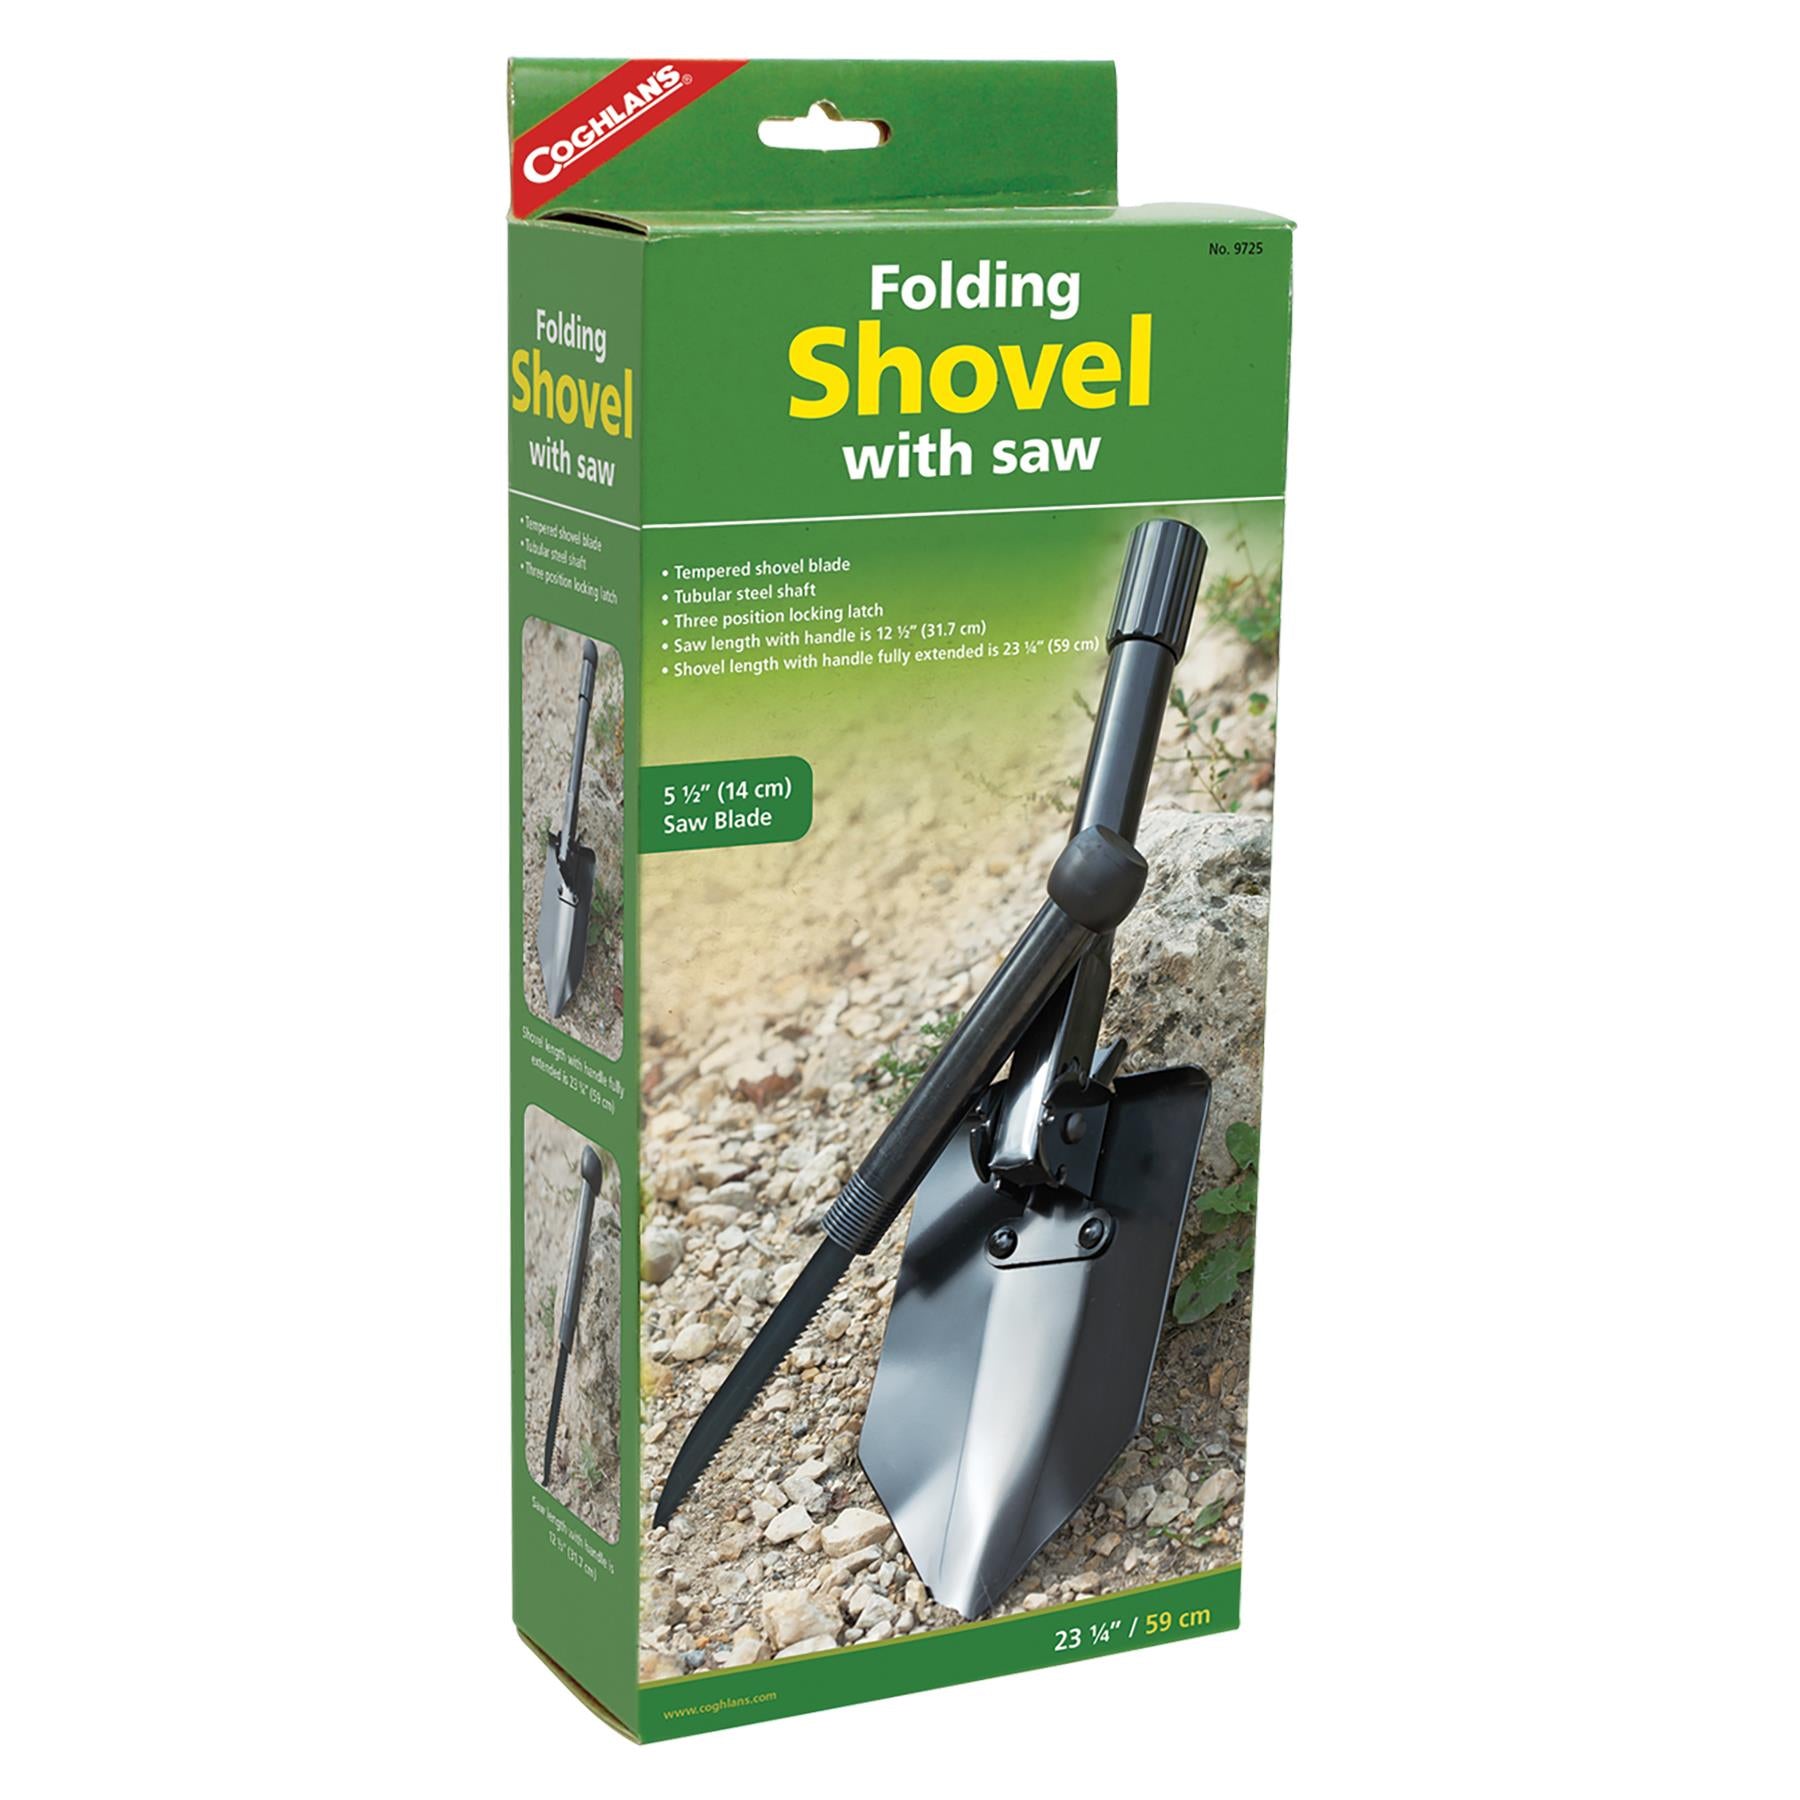 Folding Shovel with Saw